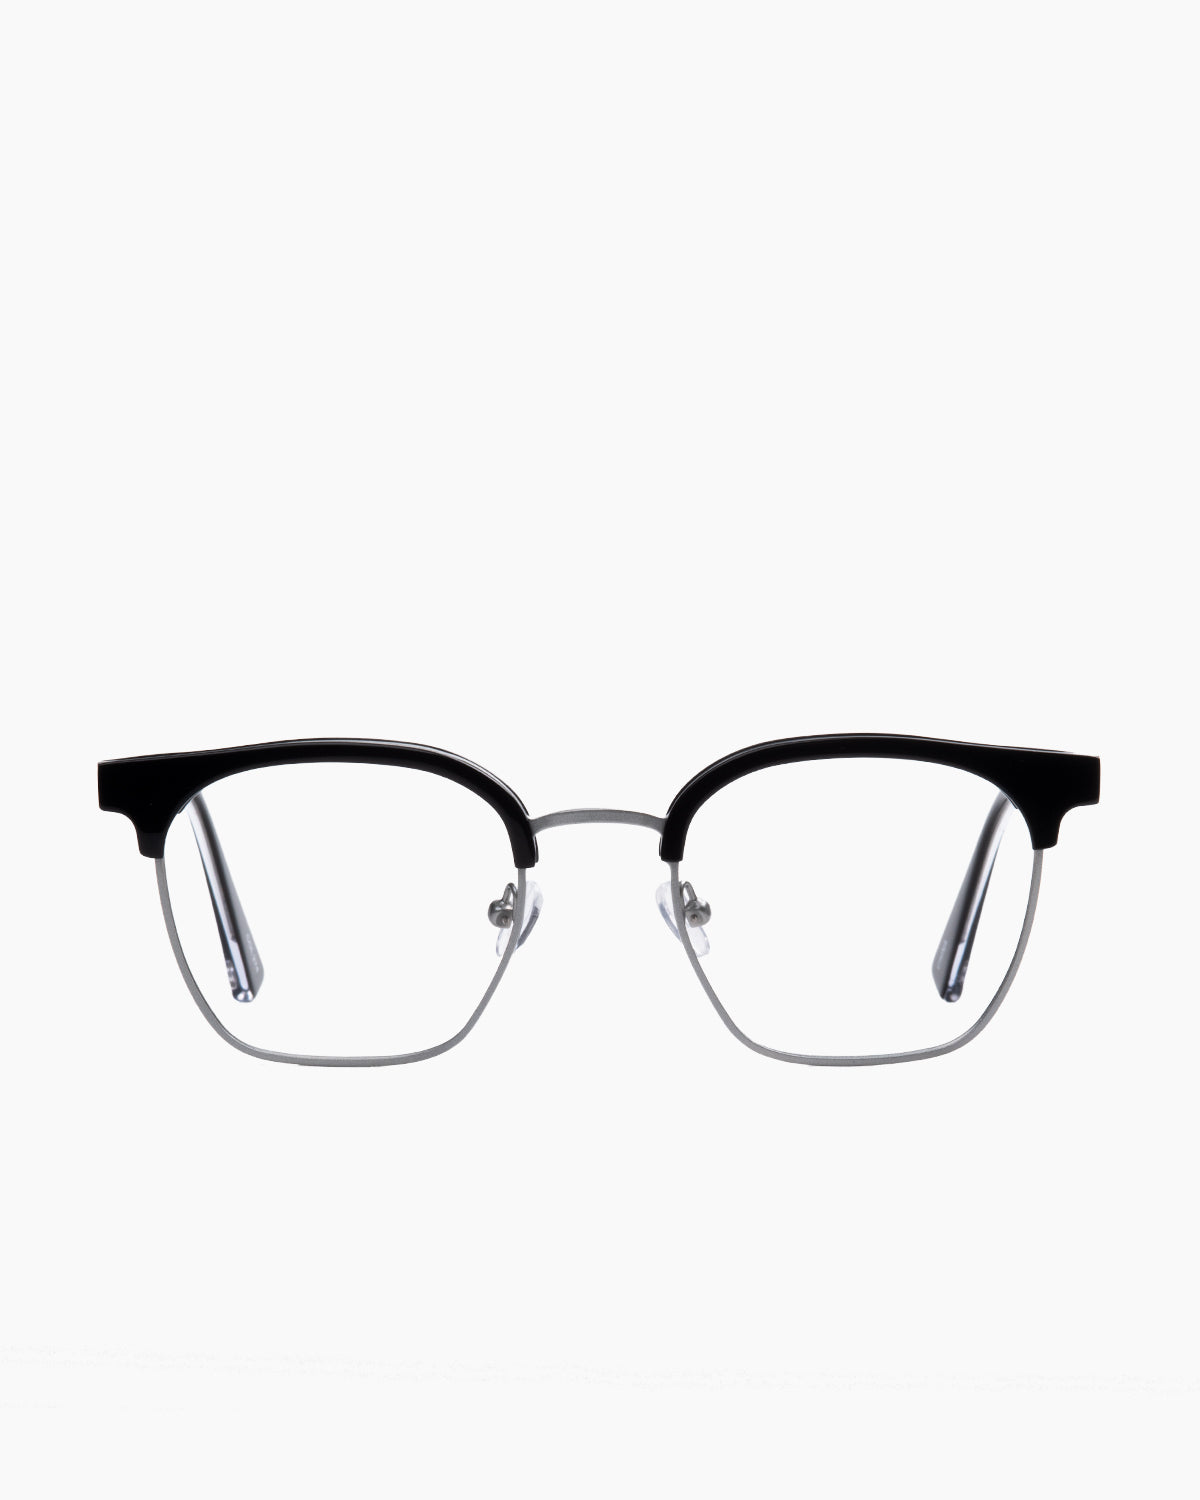 Evolve - Woodrow - 274 | Bar à lunettes:  Marie-Sophie Dion